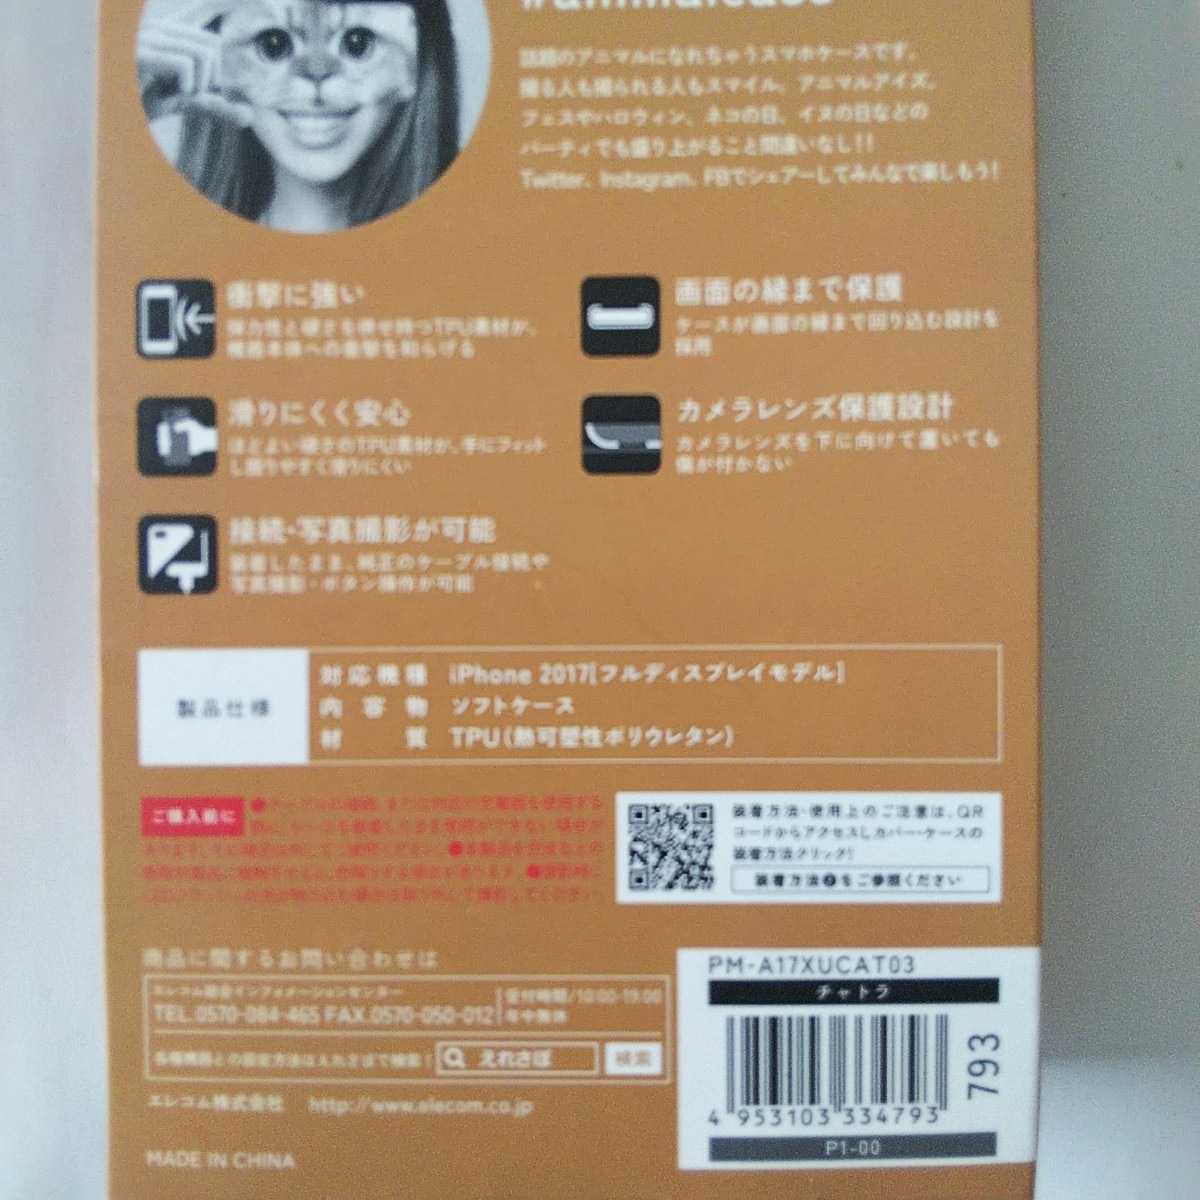 iPhone XS/X для мягкий чехол tech s коричневый -animal eye коричневый тигр кошка PM-A17XUCAT03